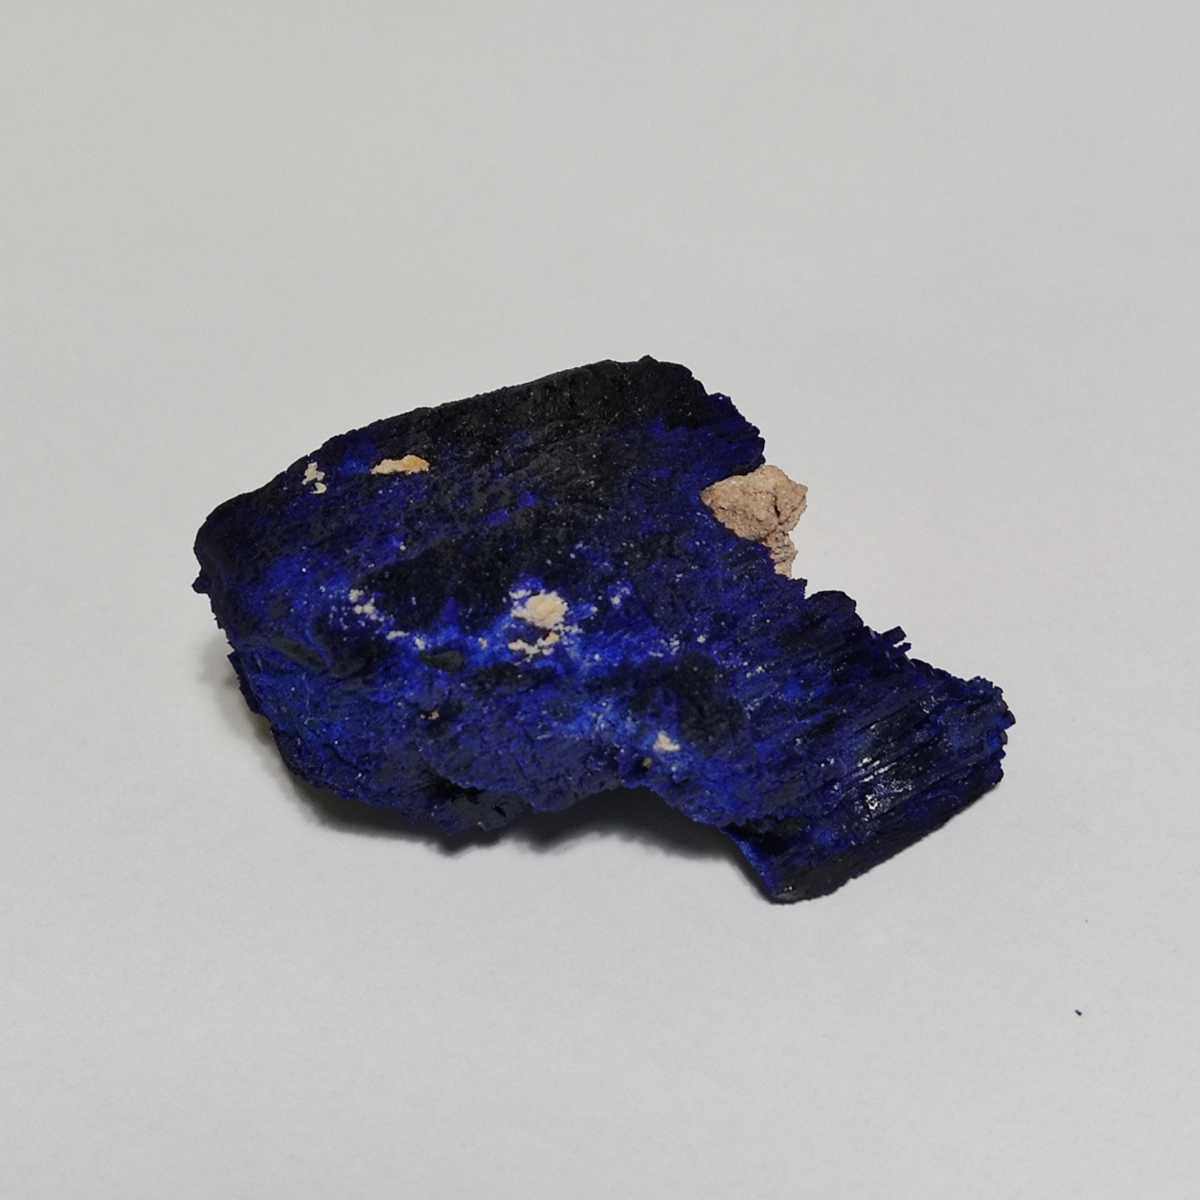 都内で 新品、未使用 パワーストーン アズライト(藍銅鉱) 天然石 原石